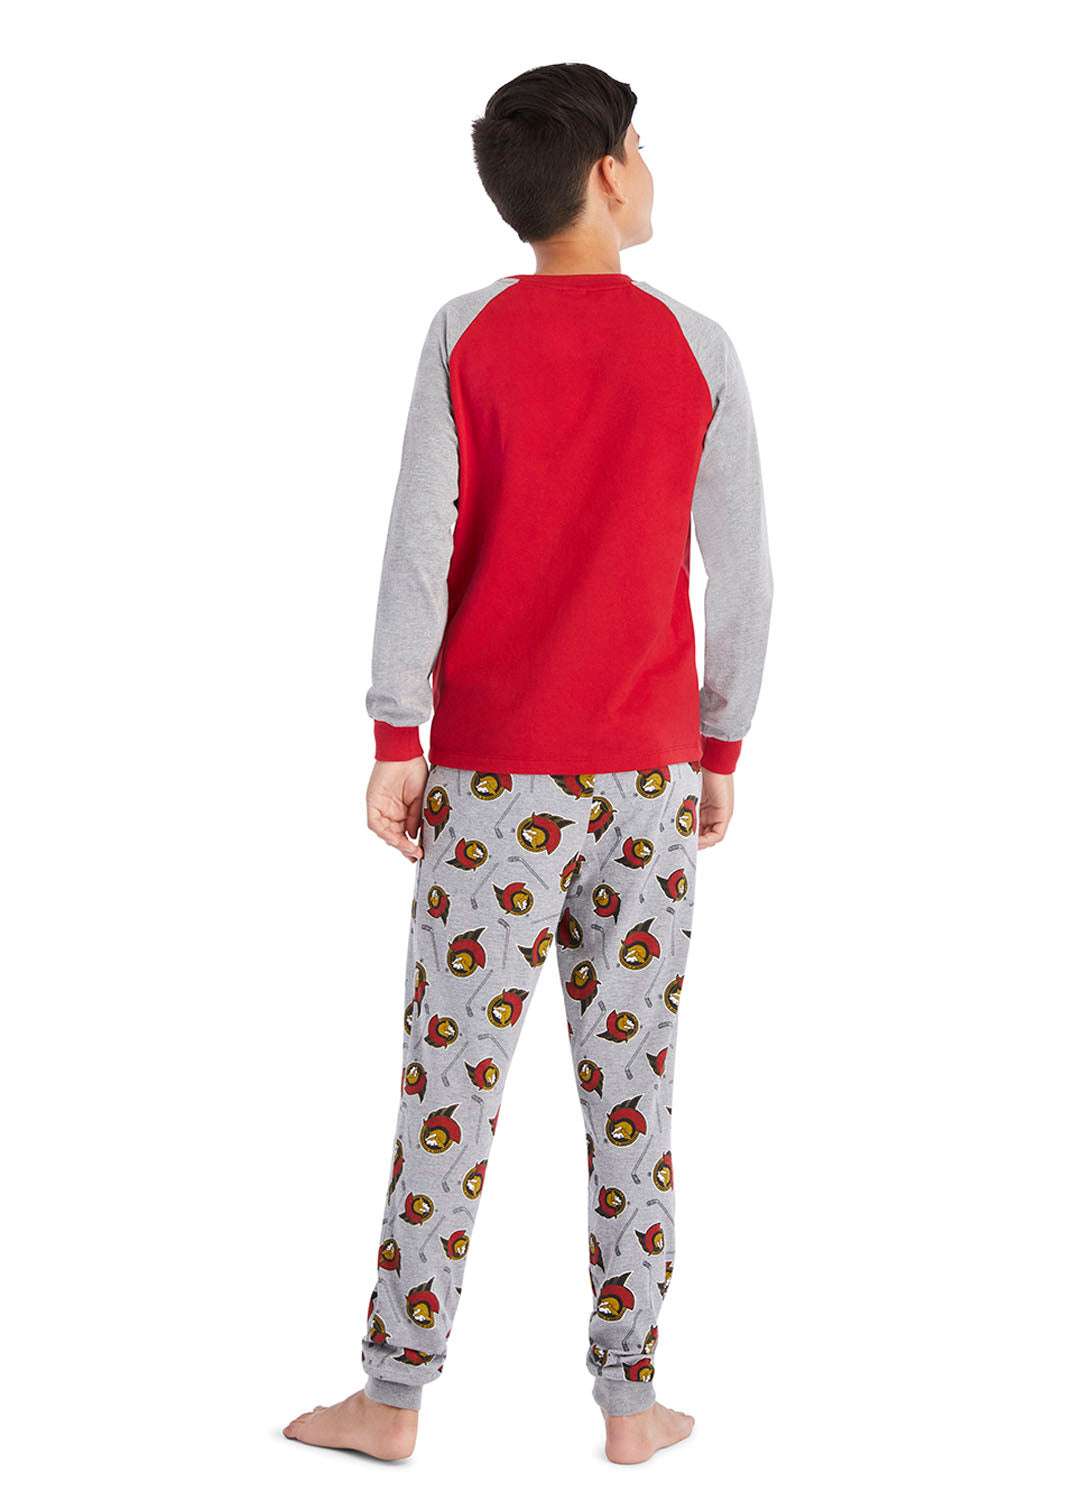 Back view Boy wearing Ottawa Senators Pajama Set